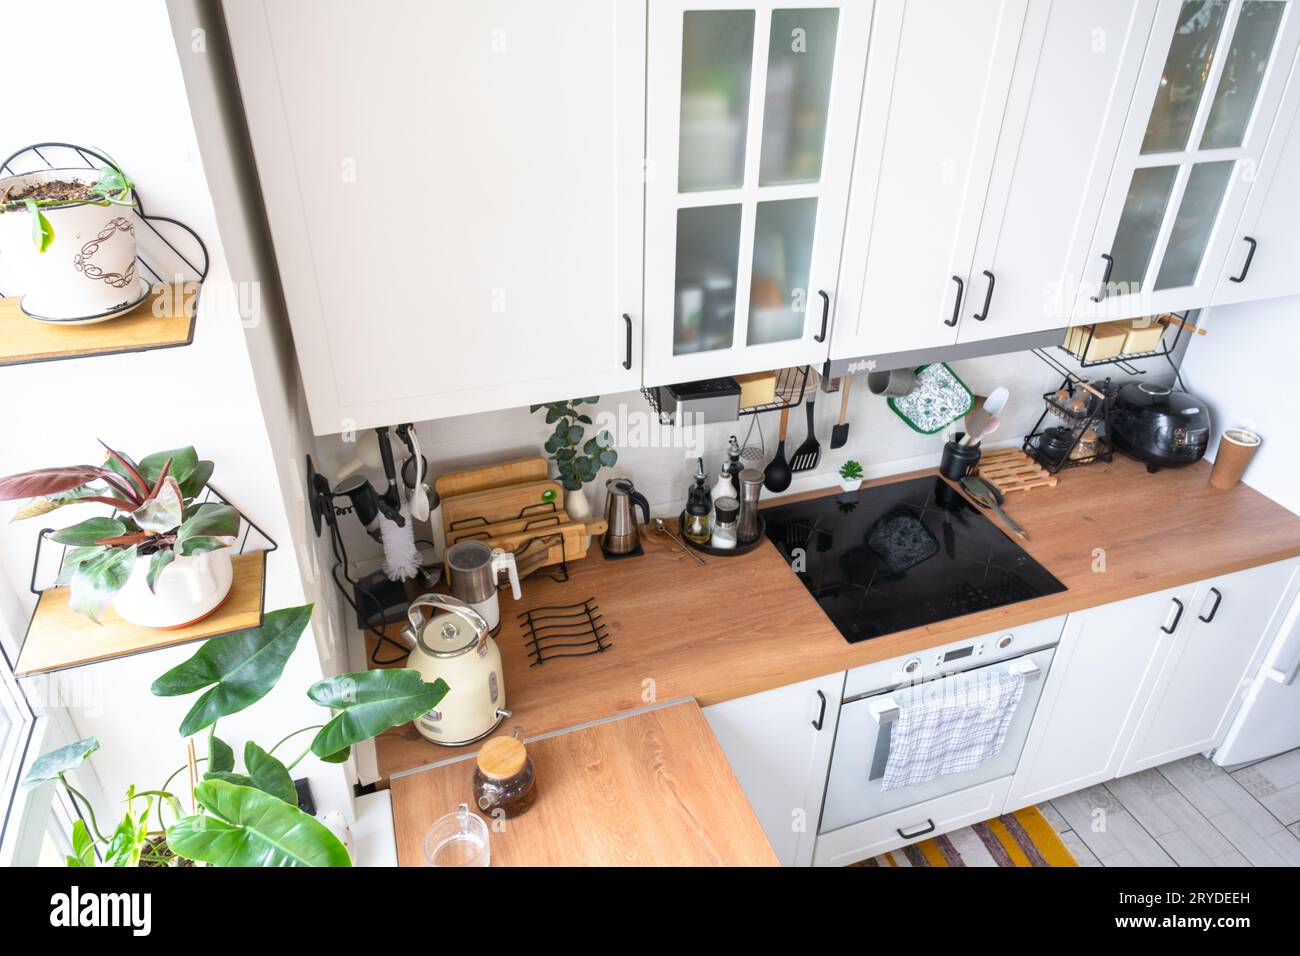 Moderna cucina rustica di colore bianco chiaro decorata con piante in vaso e utensili da cucina in stile loft. Interno di una casa con piante da casa Foto Stock